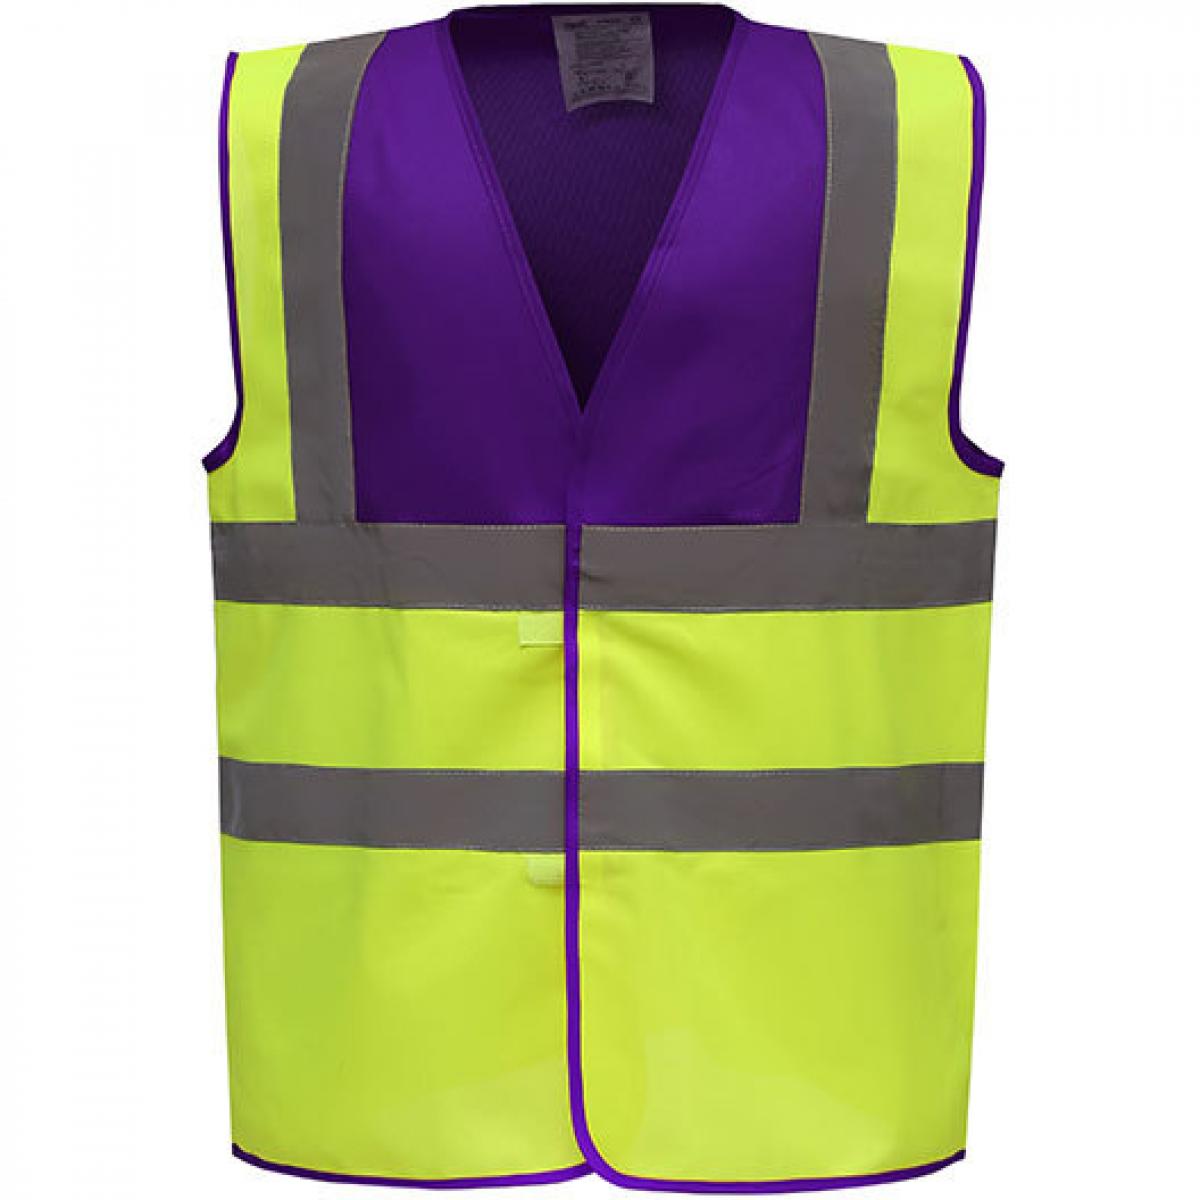 Hersteller: YOKO Herstellernummer: HVW100 Artikelbezeichnung: Sicherheitsweste High Visibility 2 Bands & Braces Waistcoat Farbe: Purple Yoke/Hi-Vis Yellow